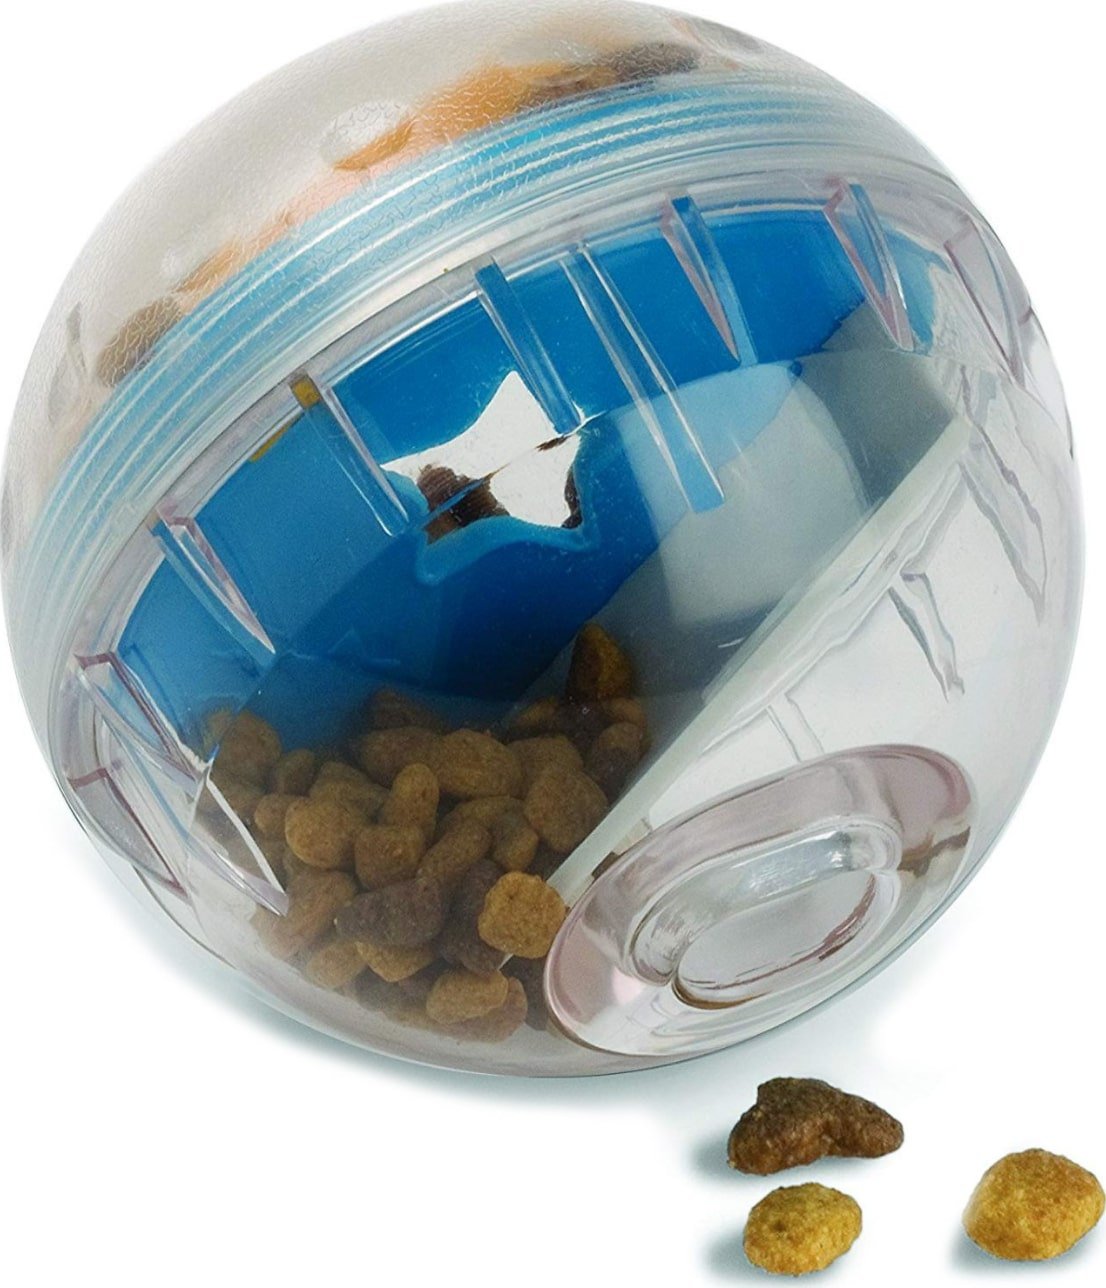 Pet Zone IQ Treat Dispenser Ball